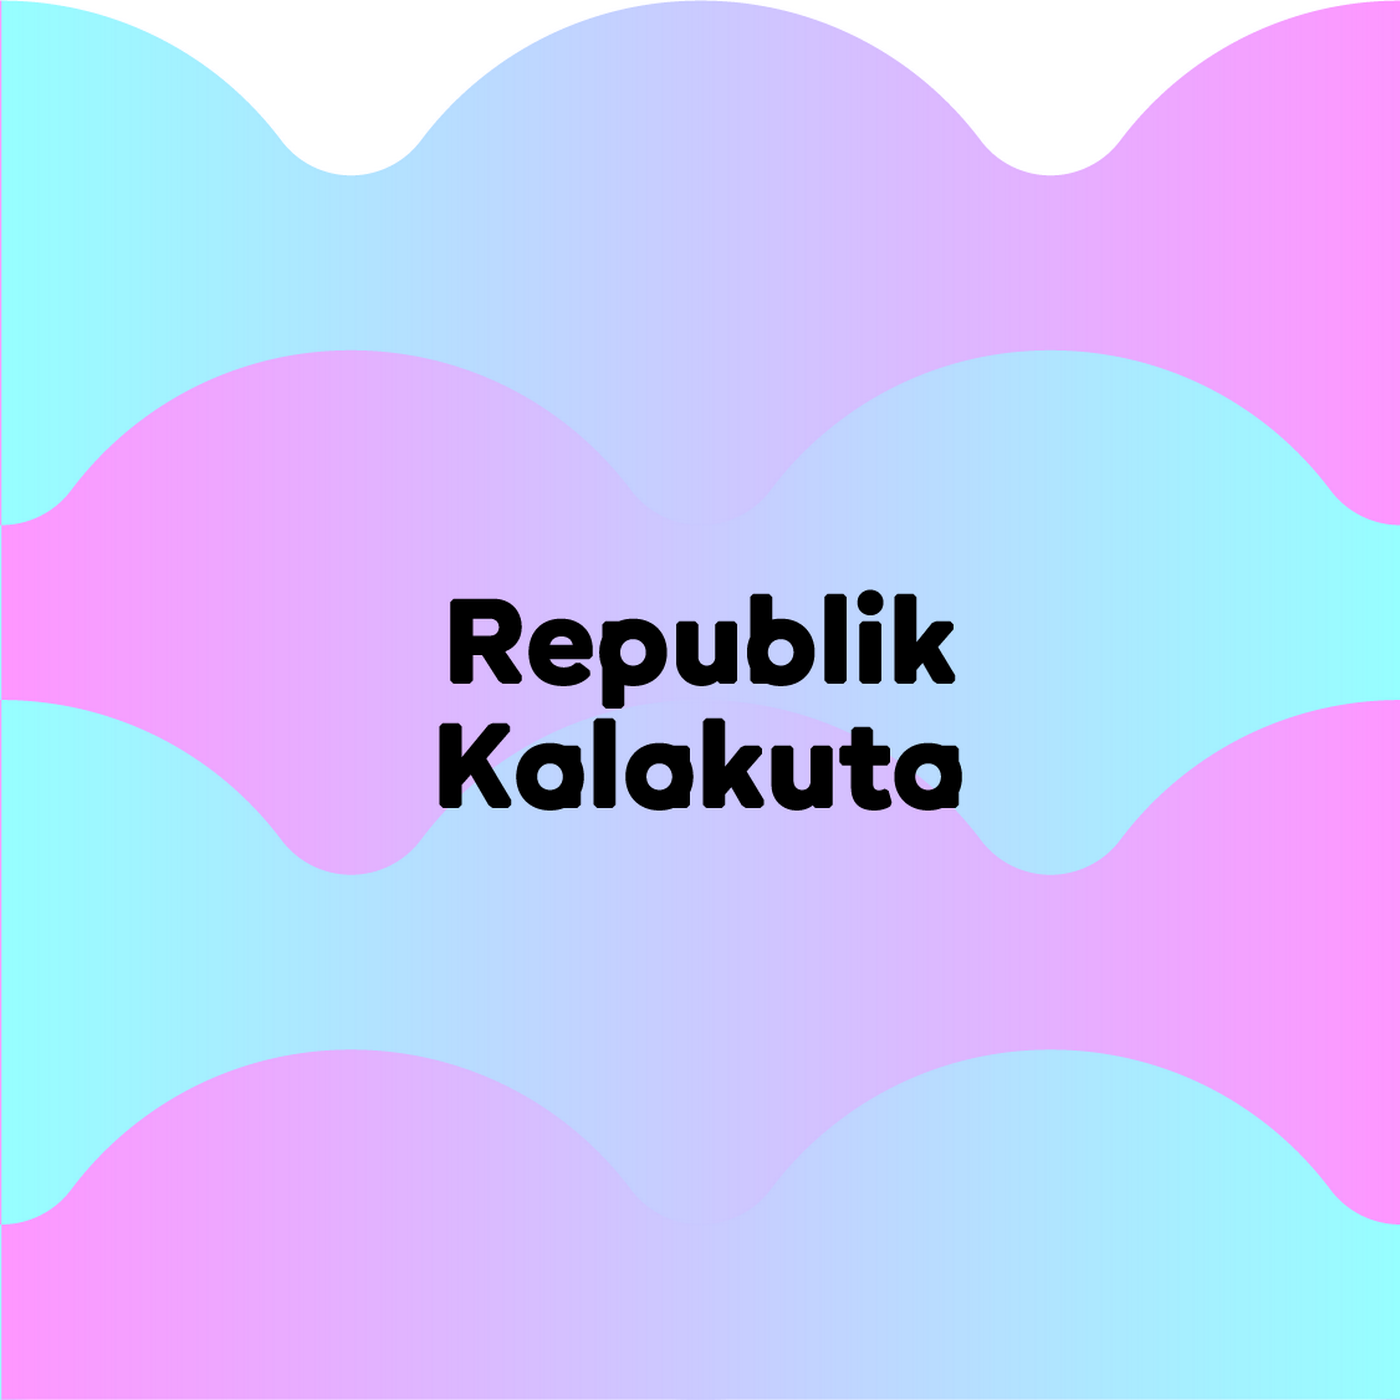 Republik Kalakuta - Couleur3